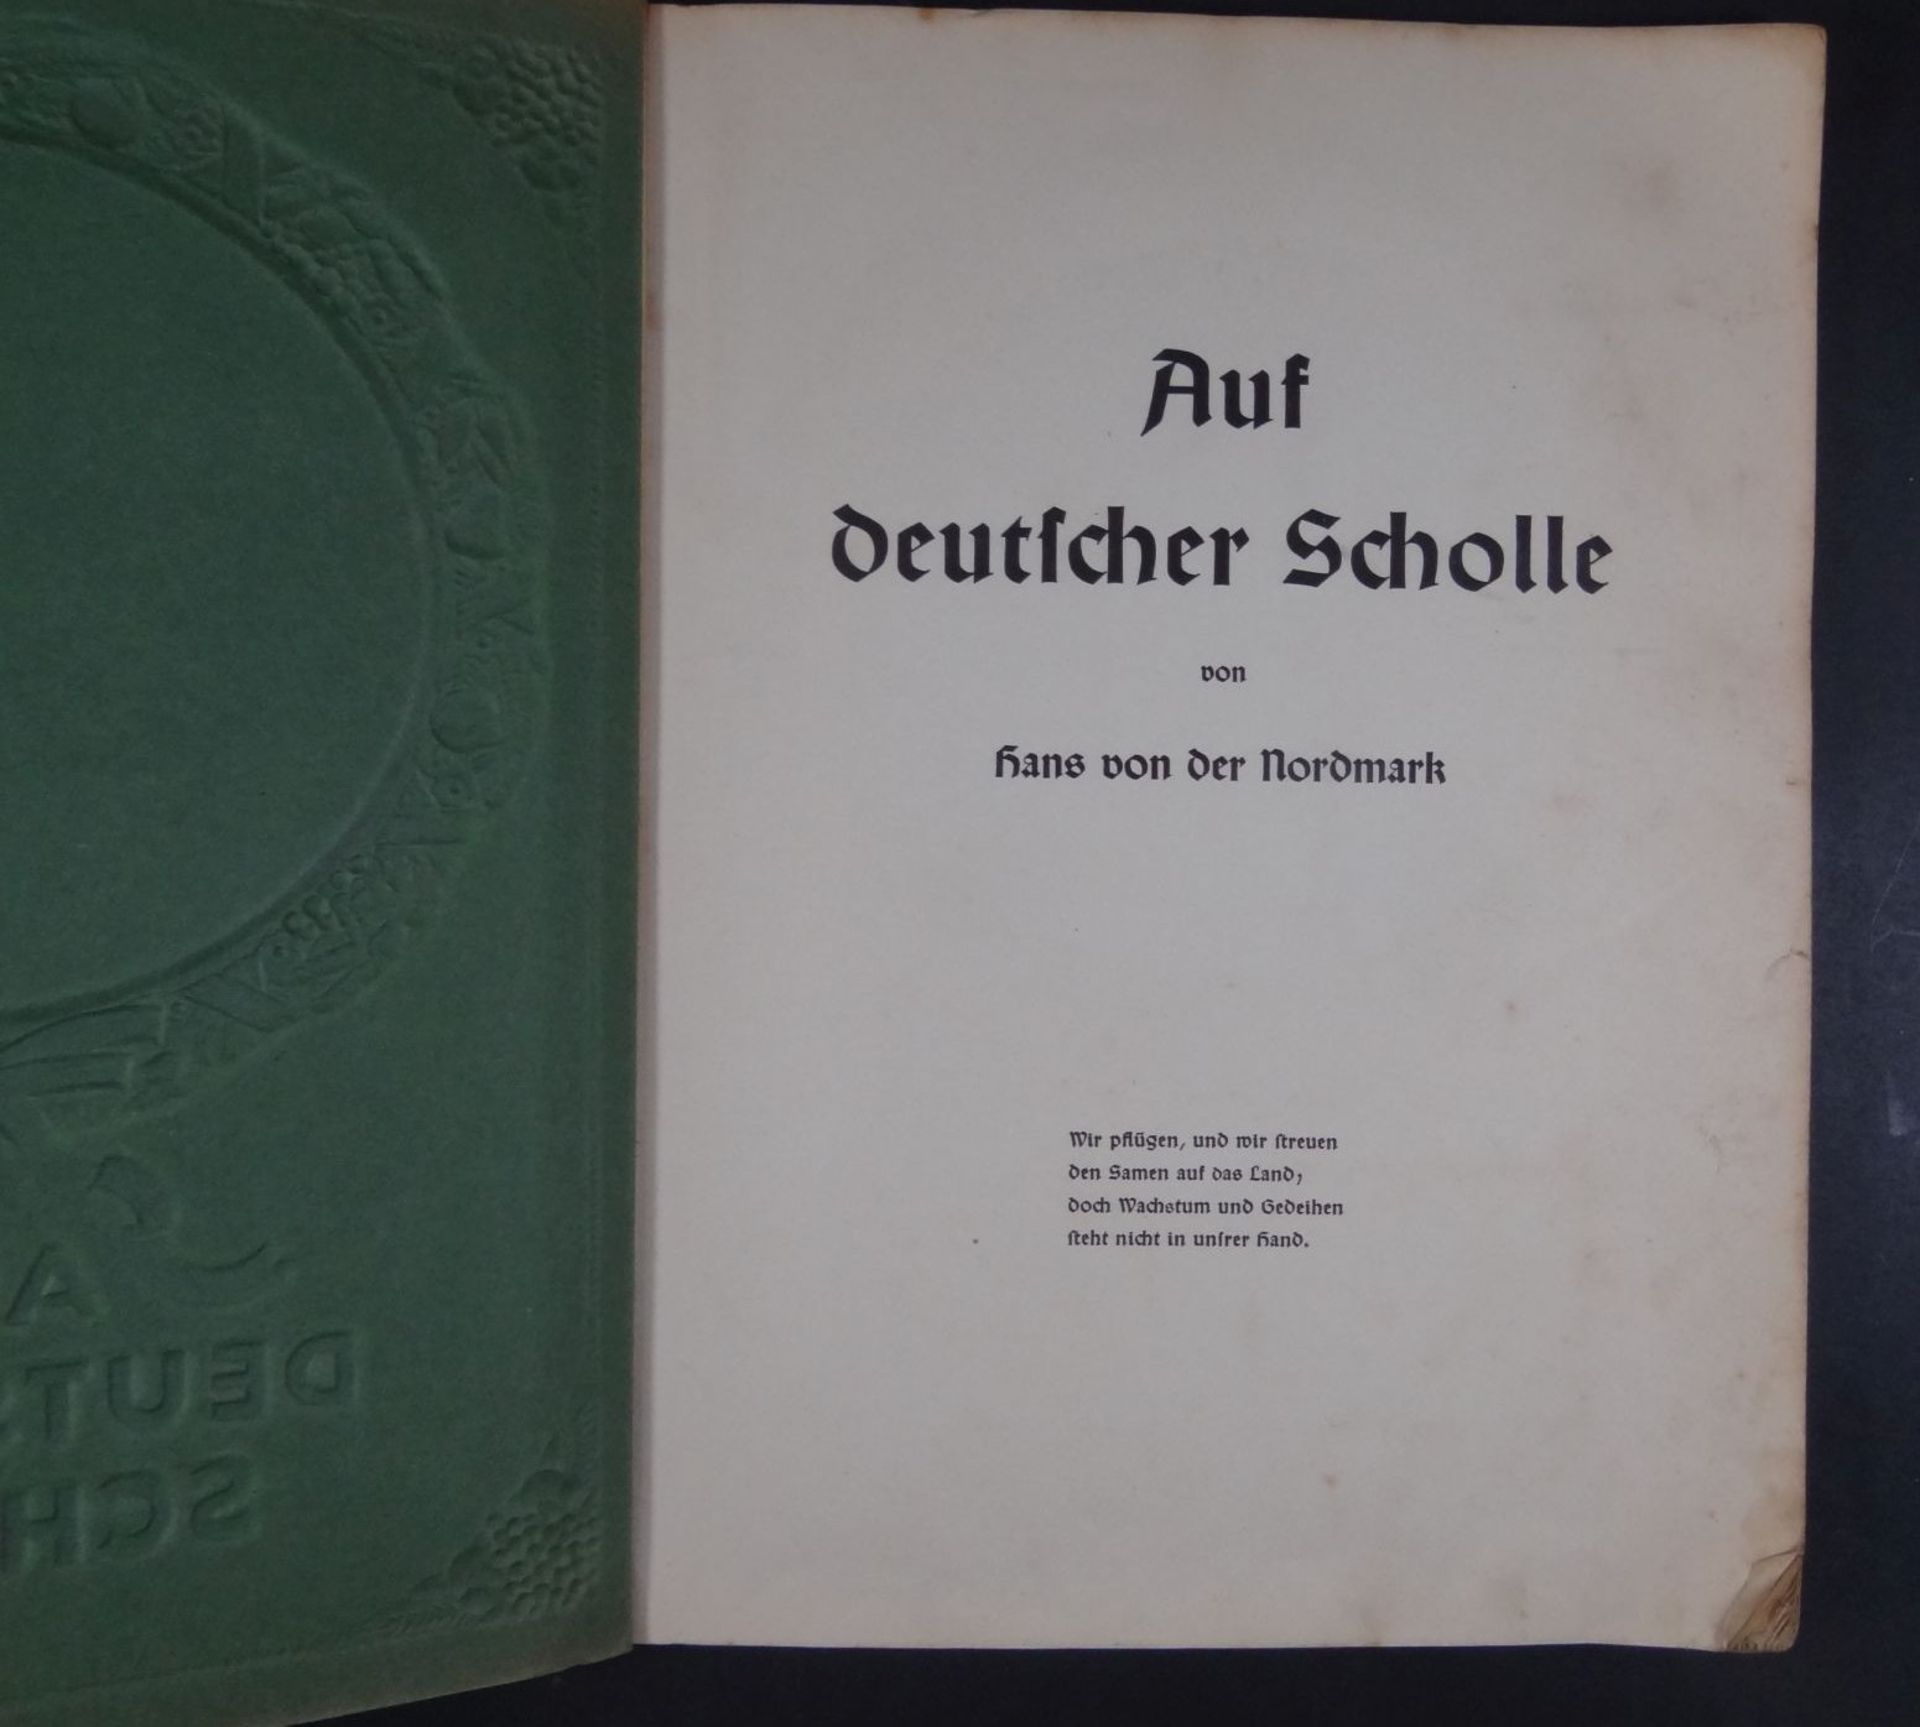 2x Sammelalben, Auf Deutscher Scholle und Deutsche Kulturbilder, 1934, wohl komplett, Alters-u. - Bild 6 aus 9